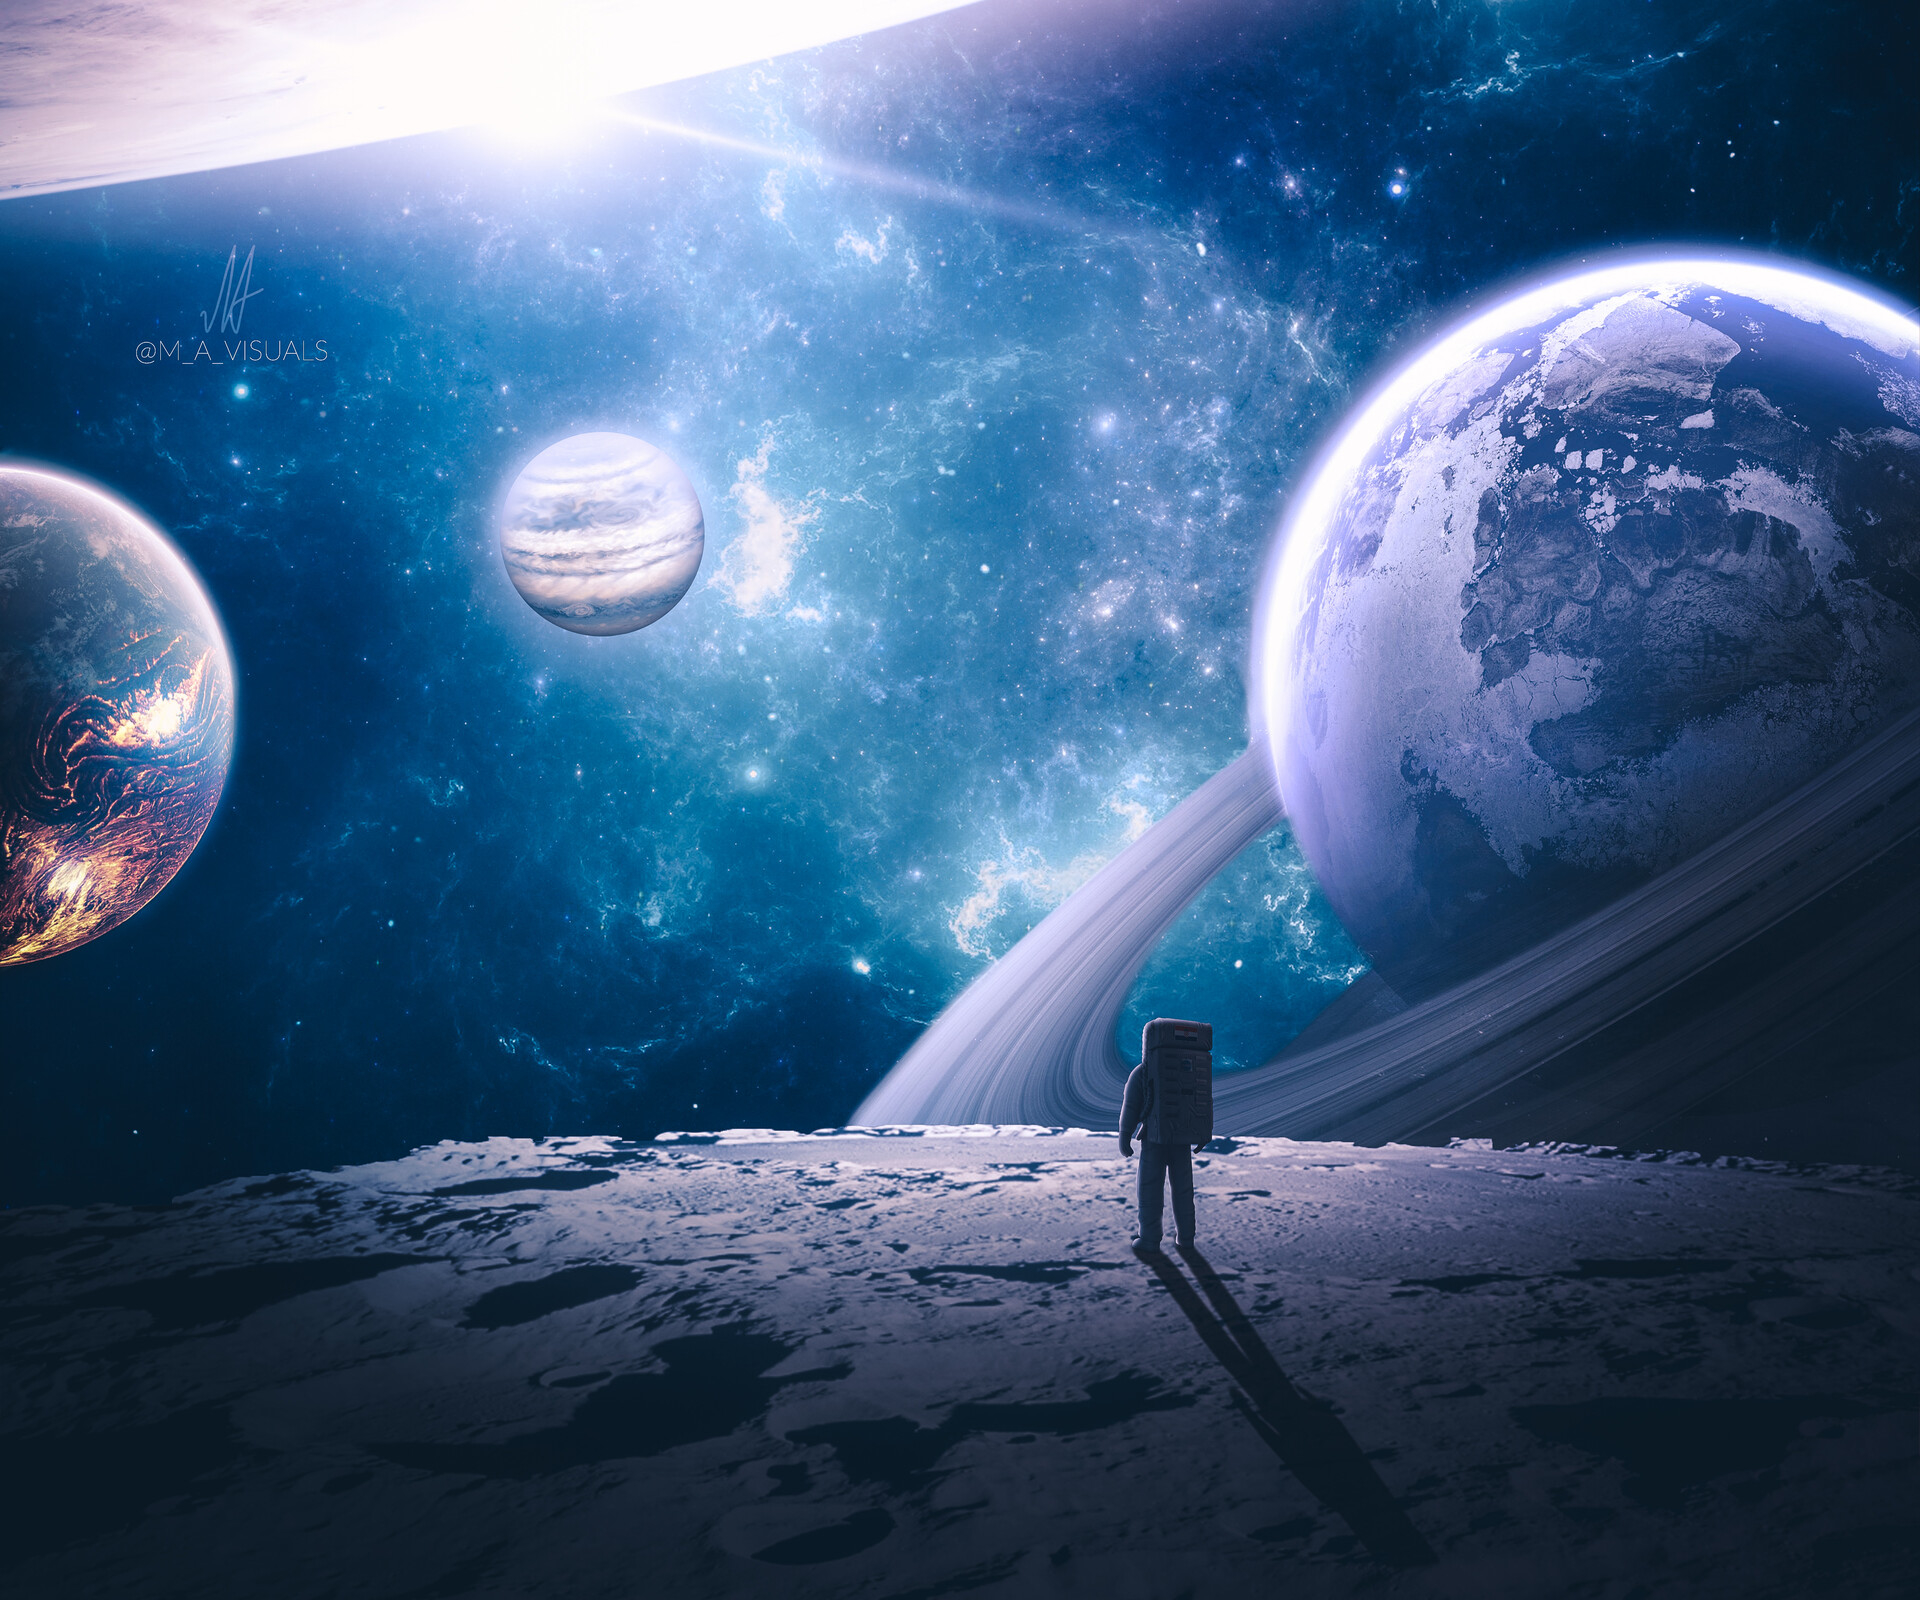 Tải 999 Tải Hình Nền Vũ Trụ Cho Máy Tính Đẹp Nhất 2018  Planets  wallpaper Wallpaper space Outer space wallpaper